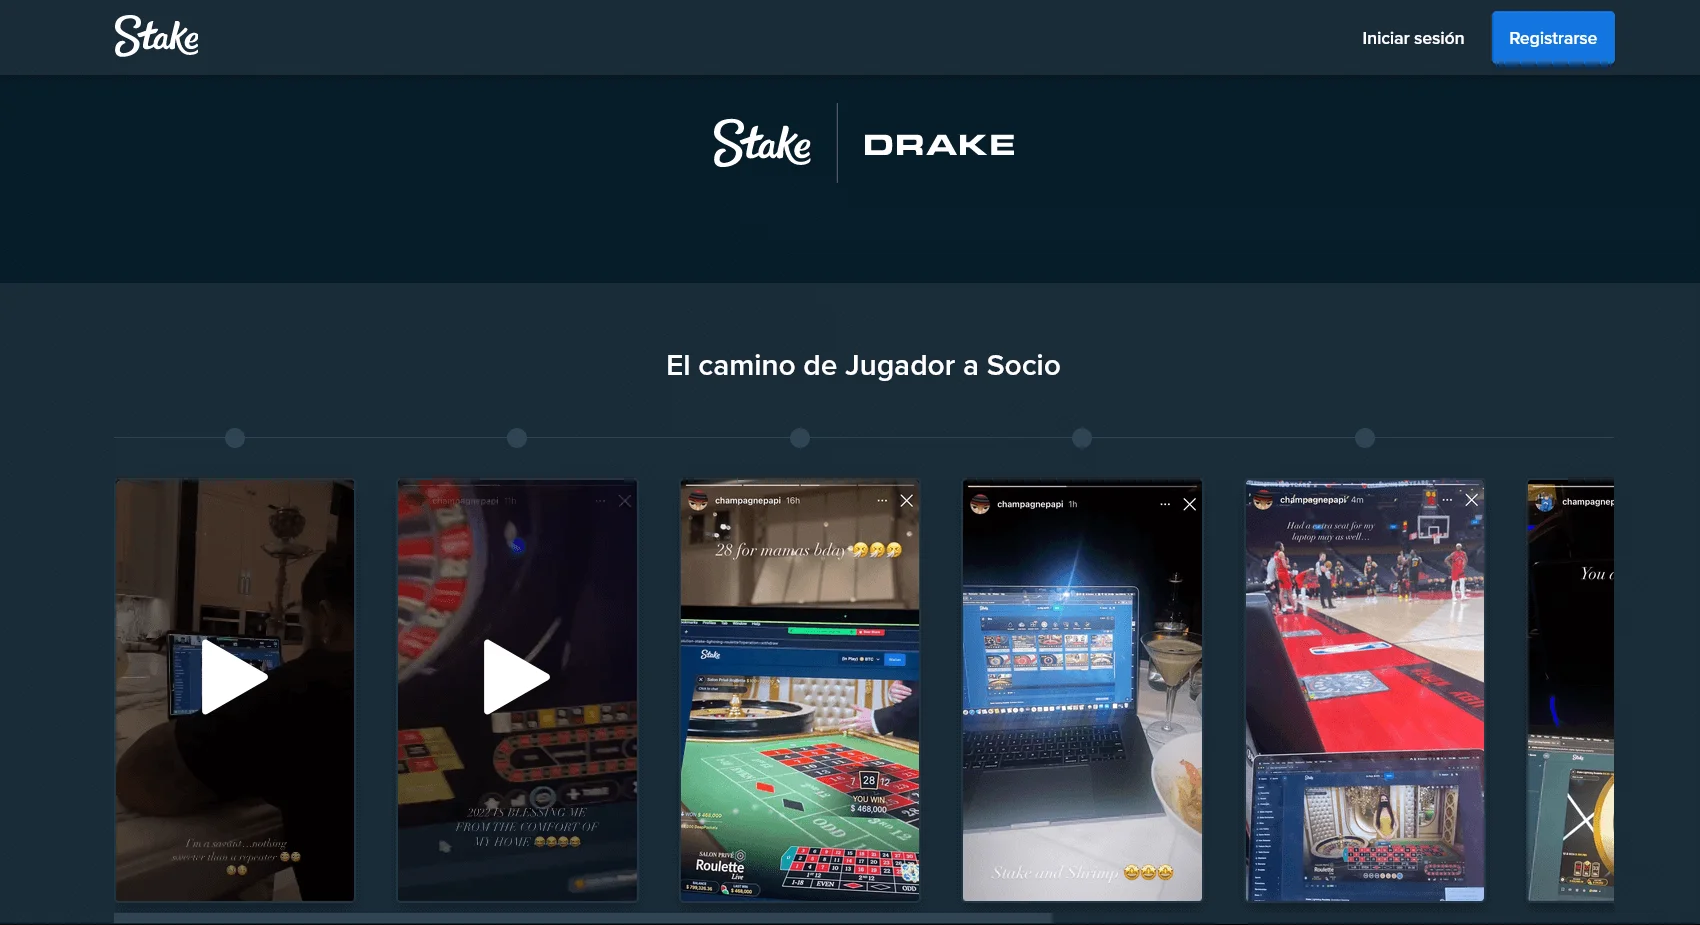 Registro fácil y juegos populares en Stake Casino